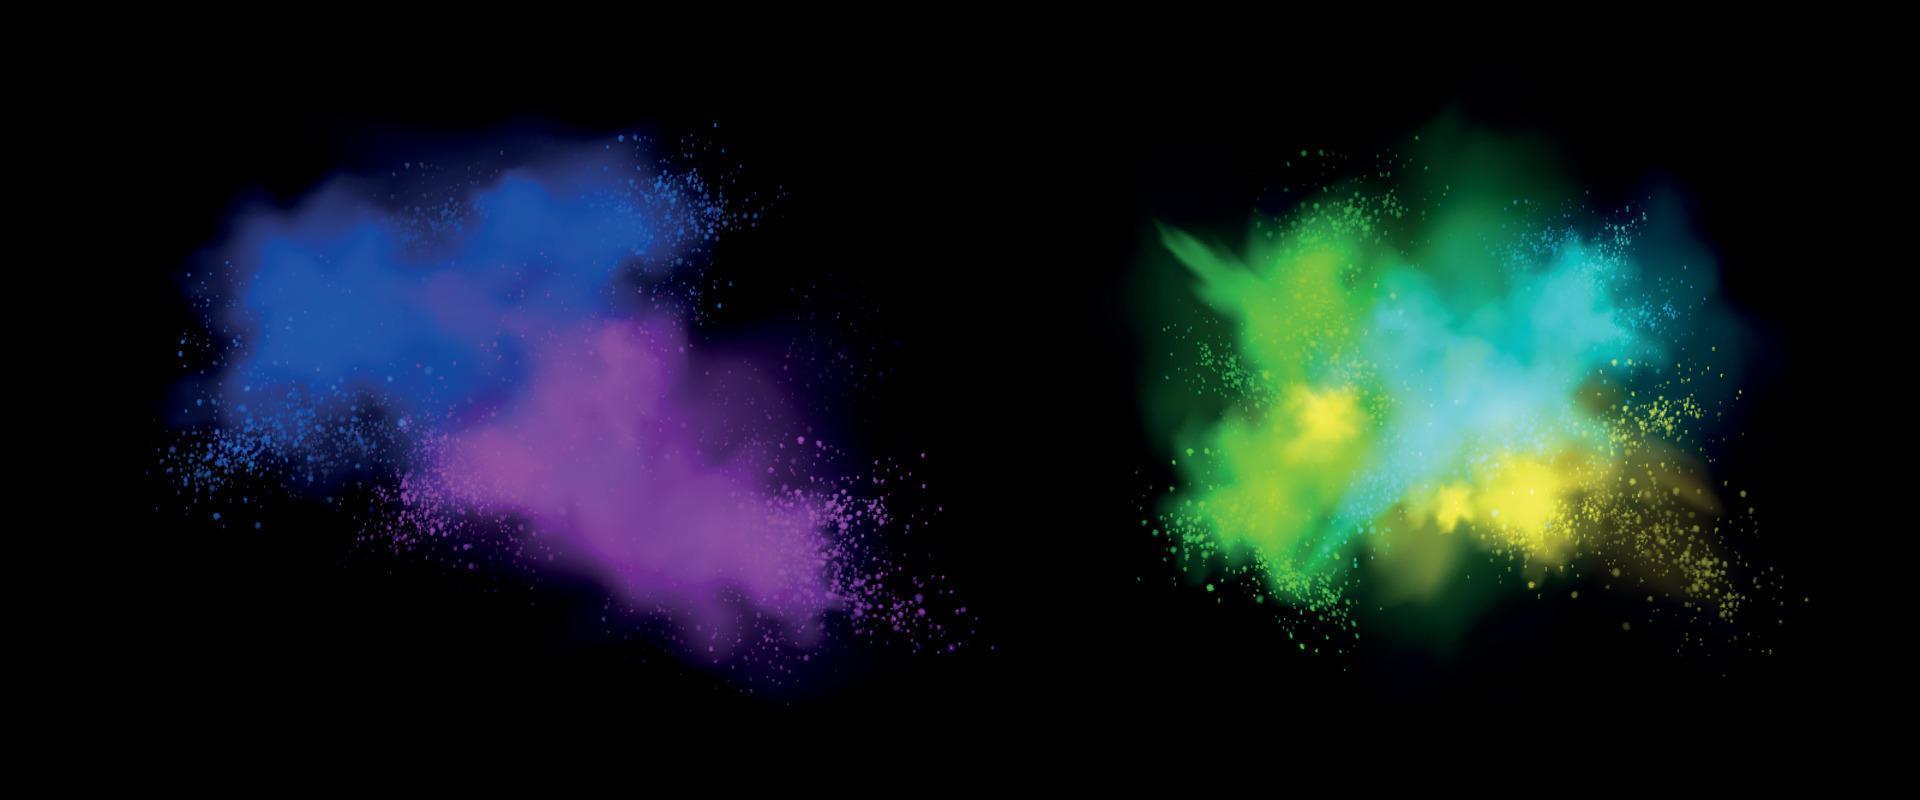 Color powder explosion, splash of paint dust vector